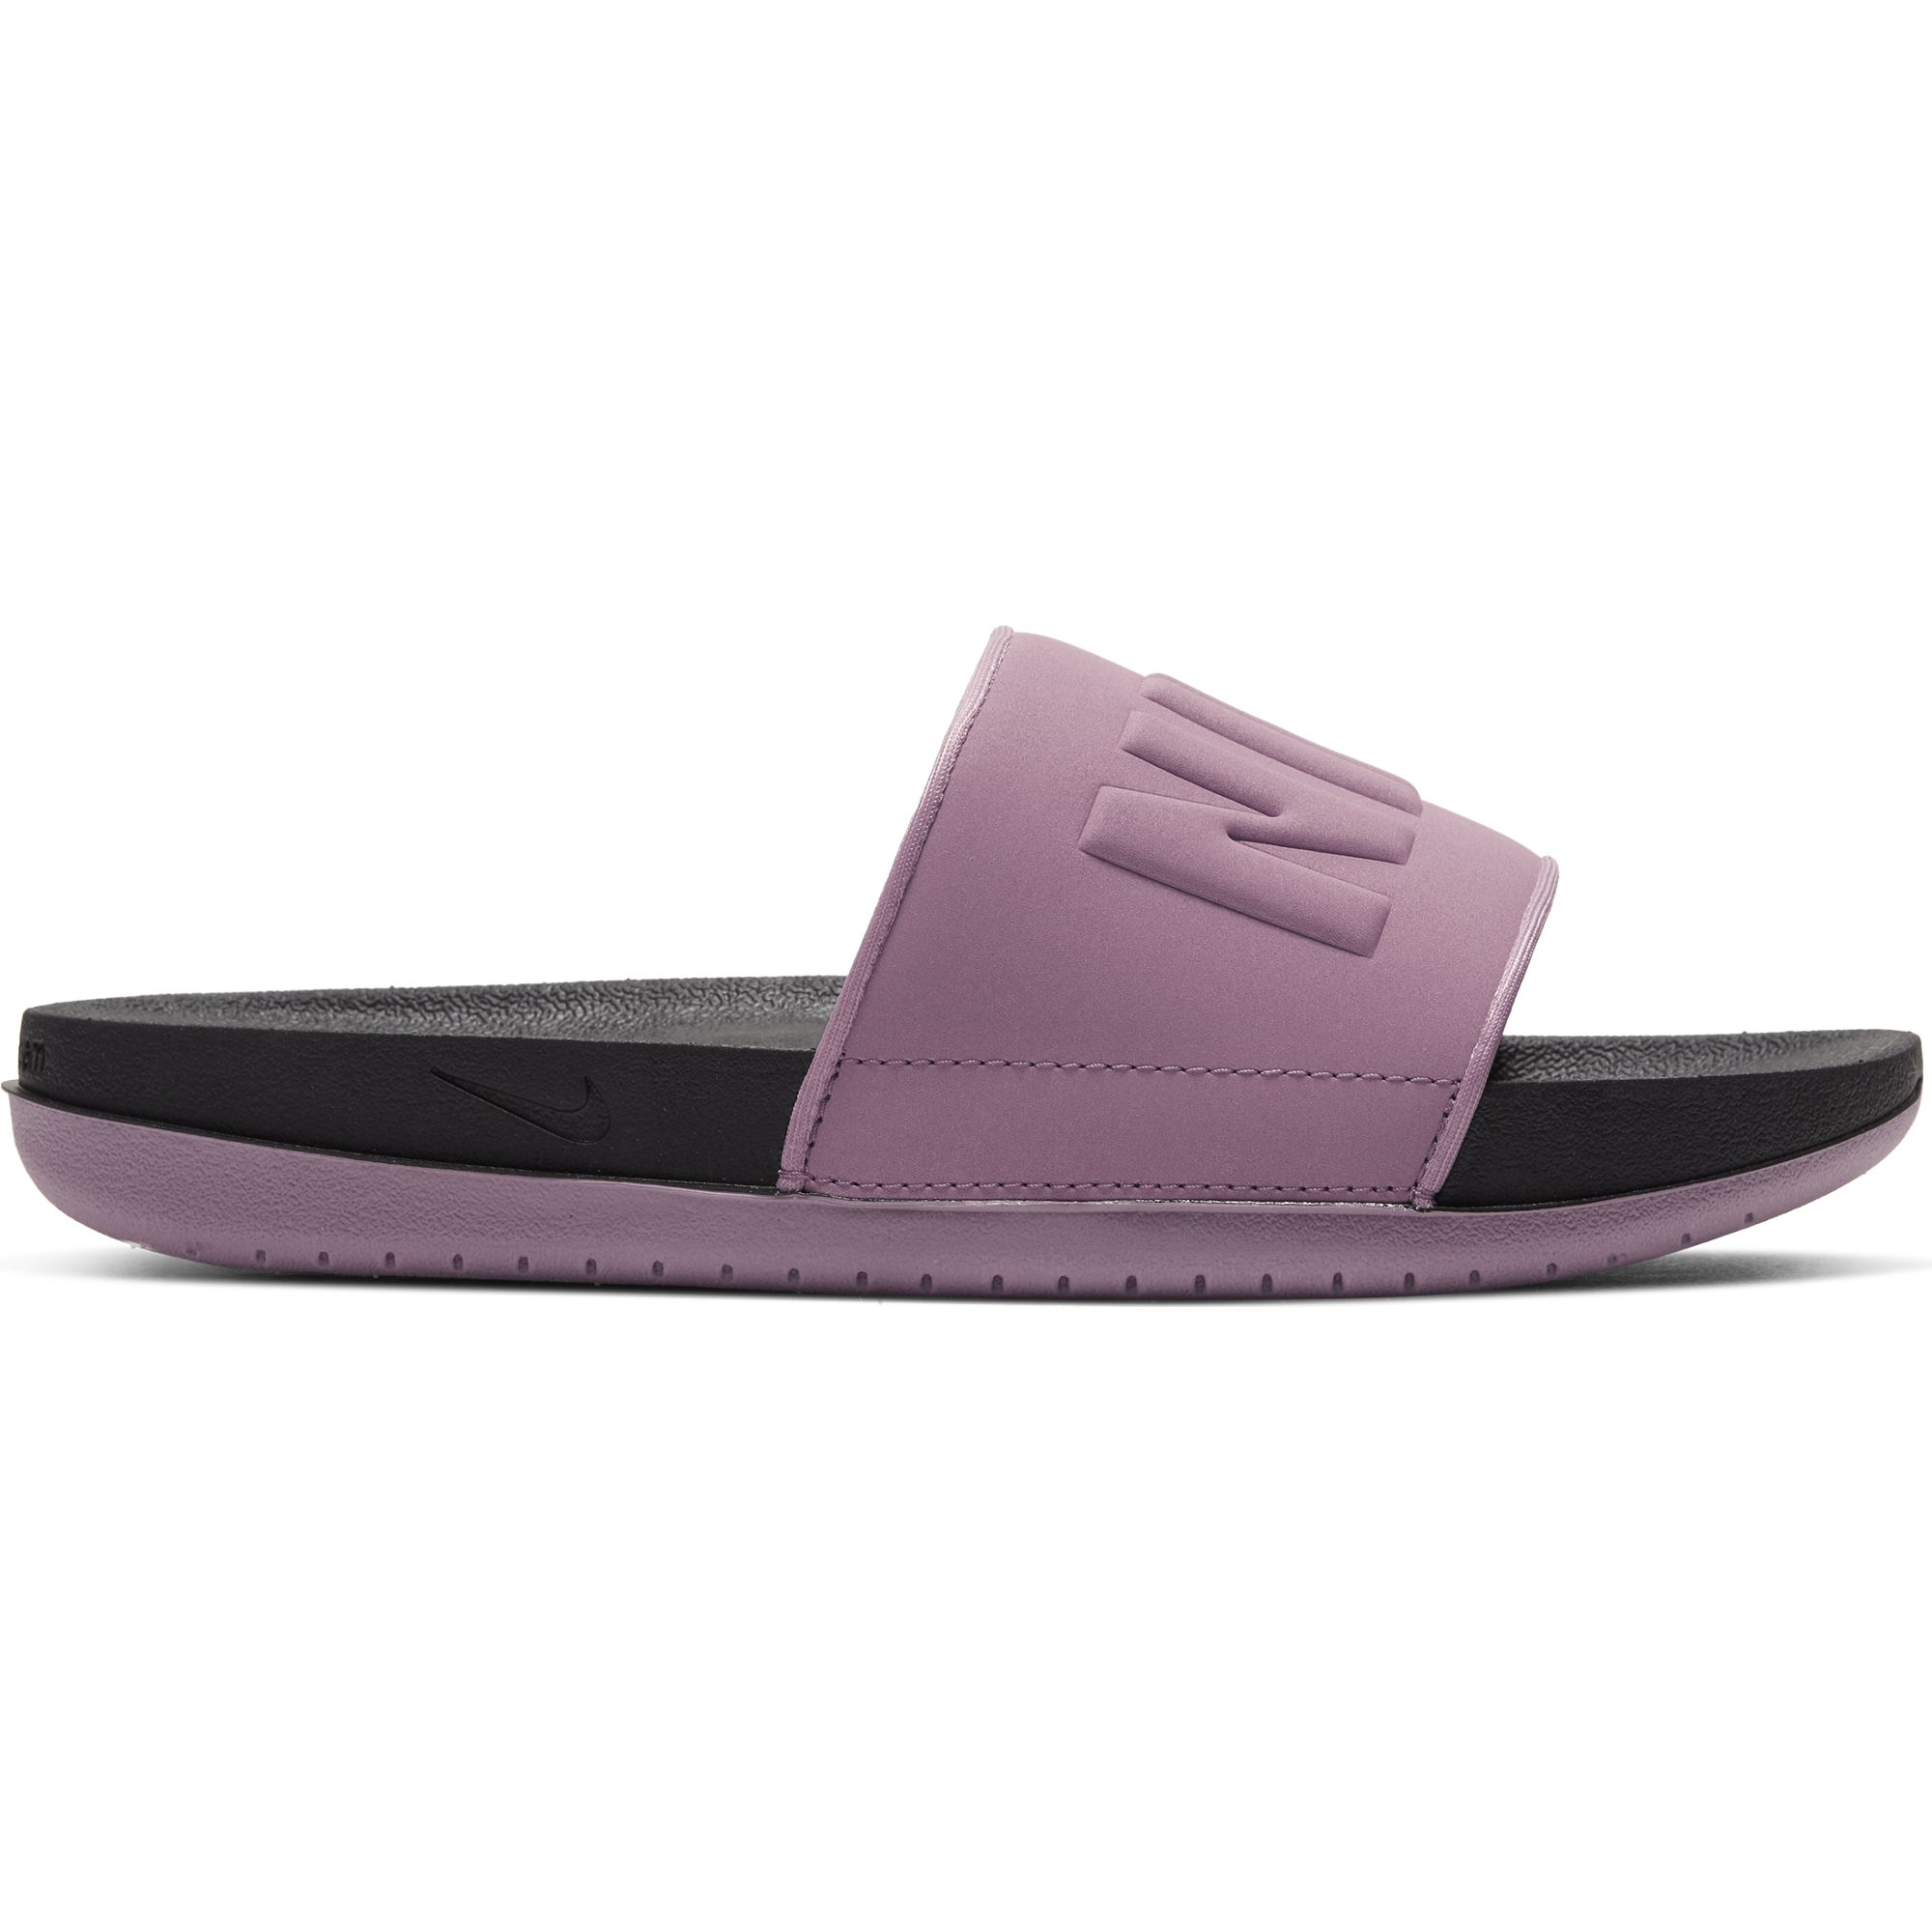 women's nike offcourt slide sandals